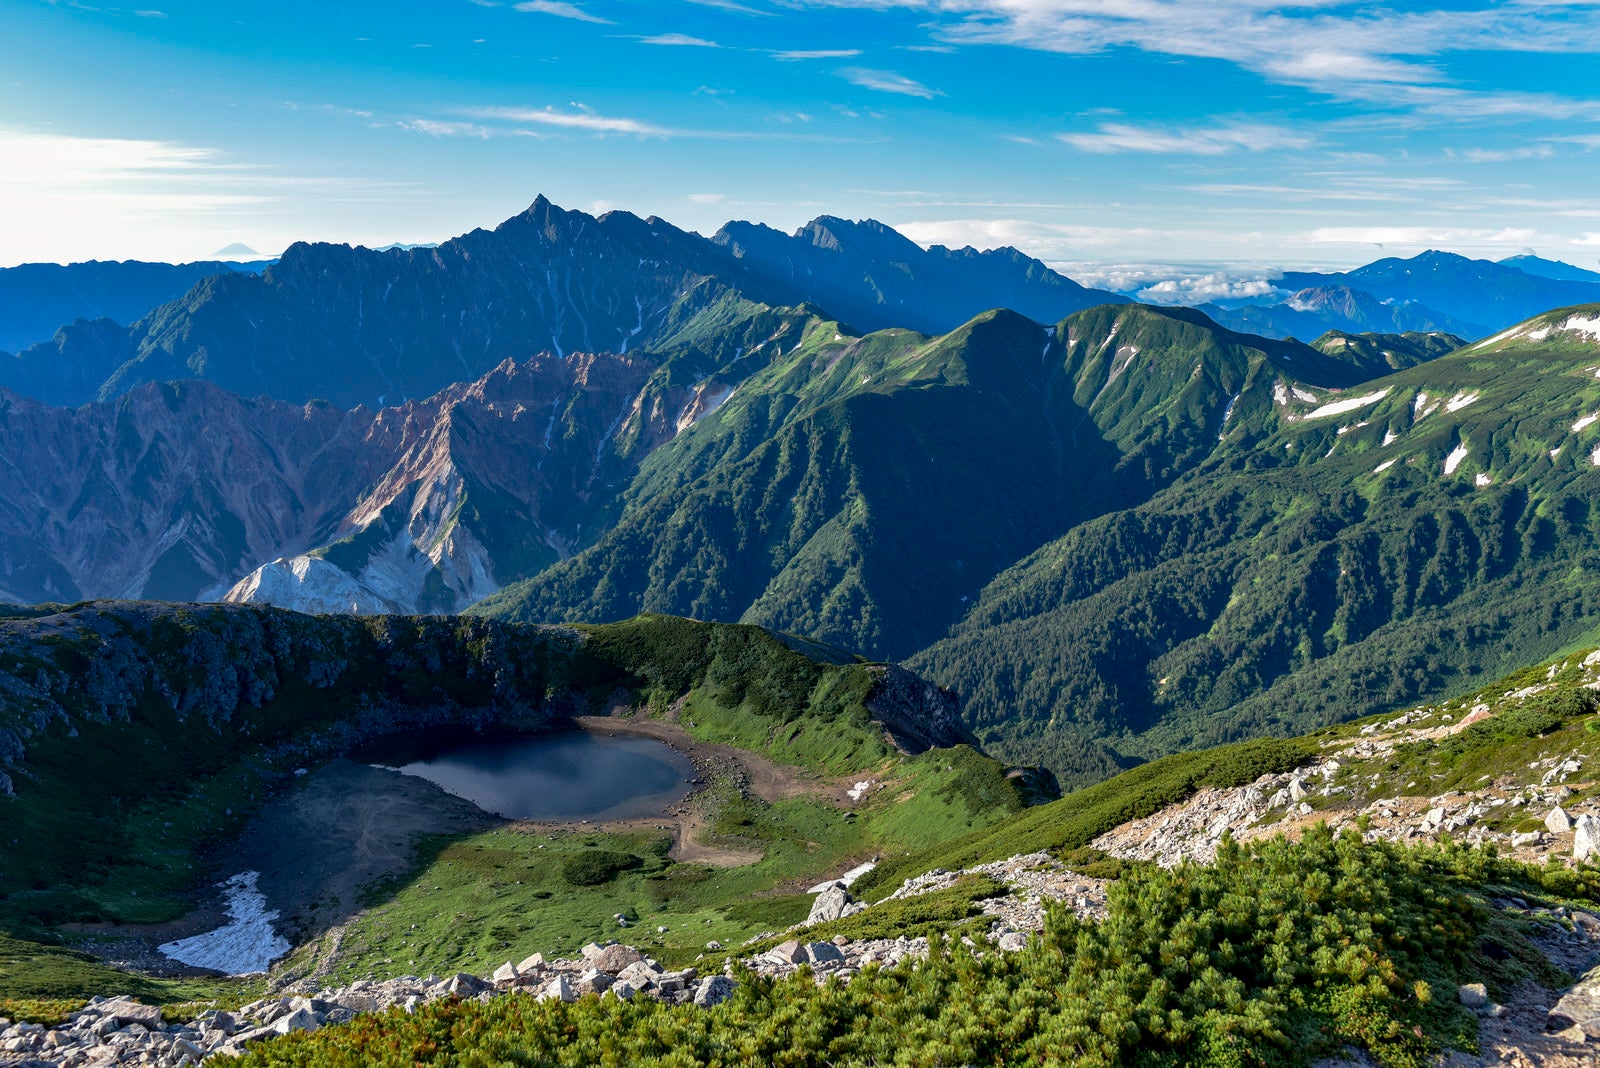 「快晴の鷲羽岳山頂から見る鷲羽池と槍ヶ岳方面の景色」の写真